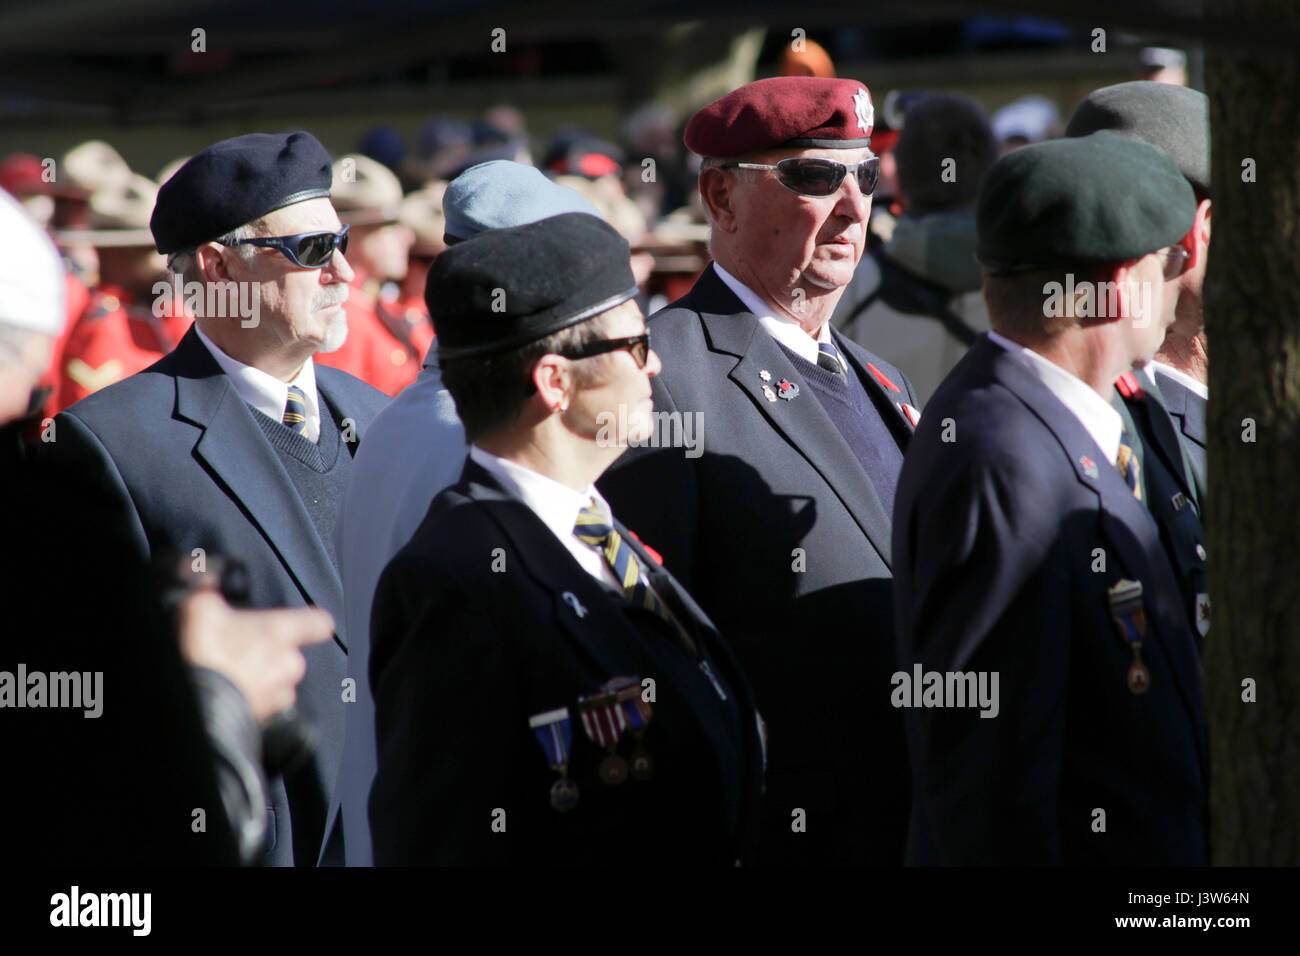 Veterani in Giorno del Ricordo cerimonie con la polizia montata in background, Victoria Park, 11 novembre 2016, London, Ontario, Canada Foto Stock